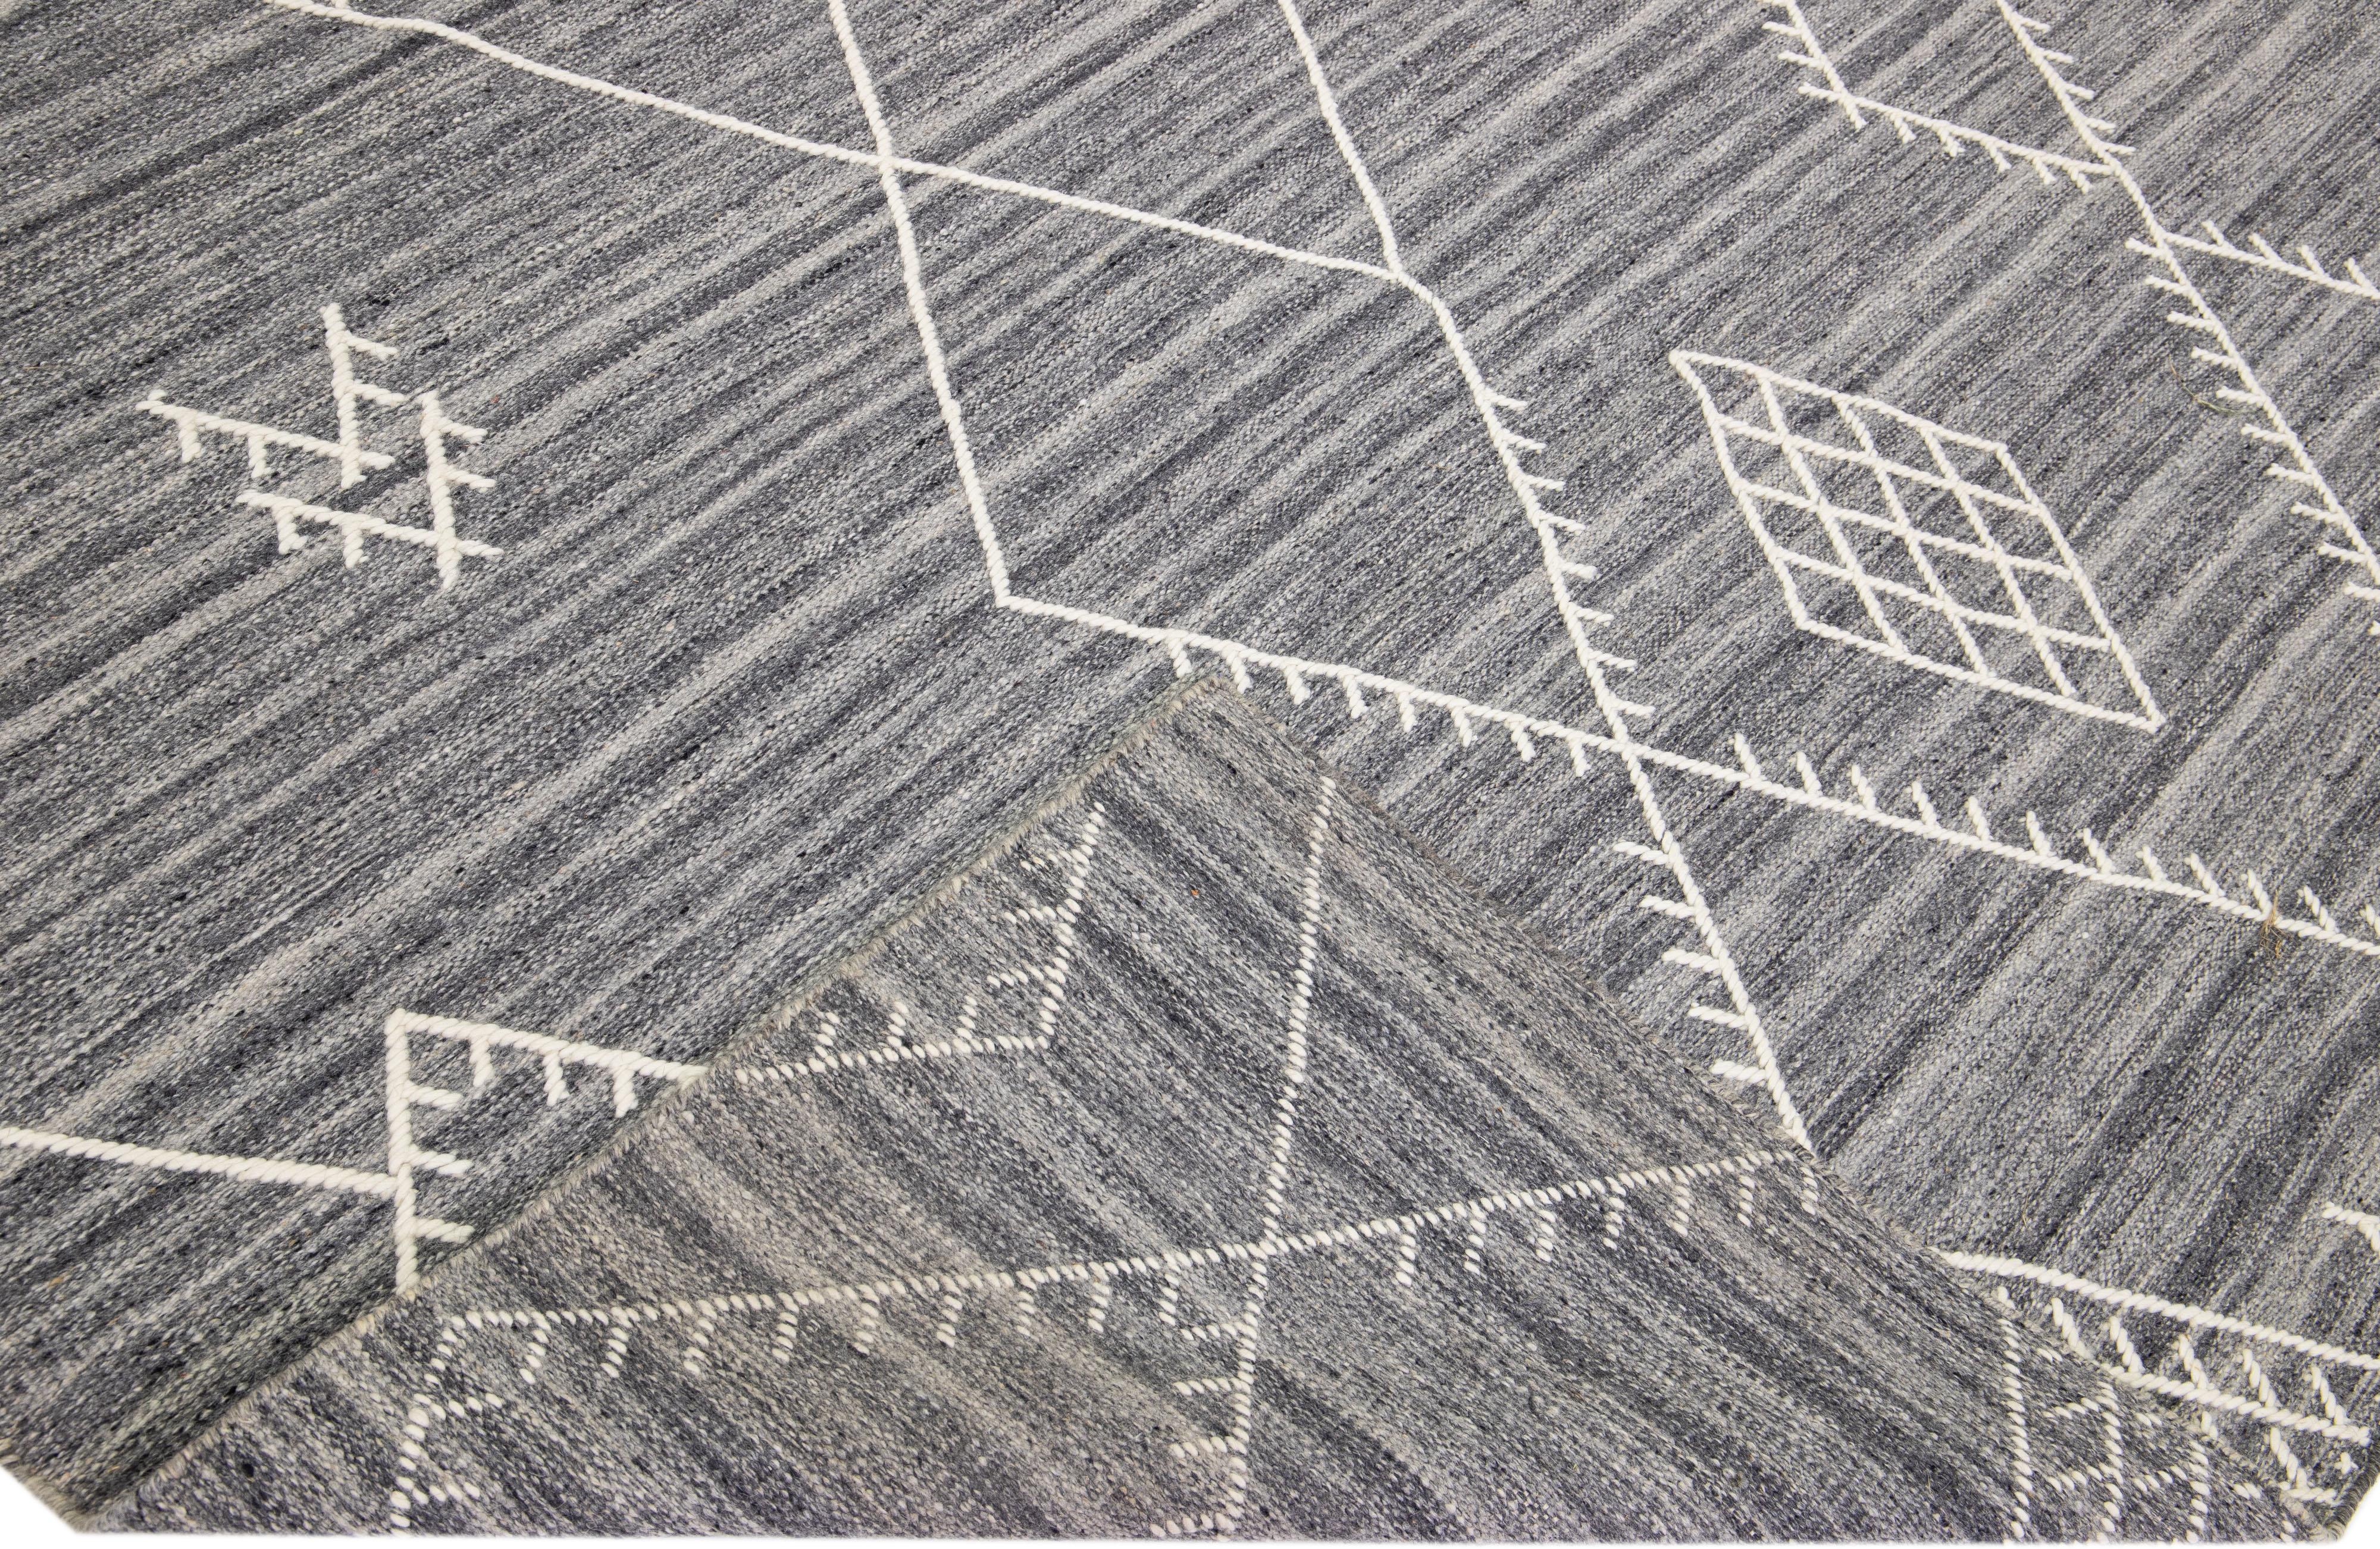 Schöner handgefertigter Kelimteppich aus Wolle mit grauem Feld. Dieser moderne Flachgewebe-Teppich aus unserer Nantucket-Kollektion hat weiße Akzente und ein wunderschönes, geometrisches Küstendesign.

Dieser Teppich misst: 10'2